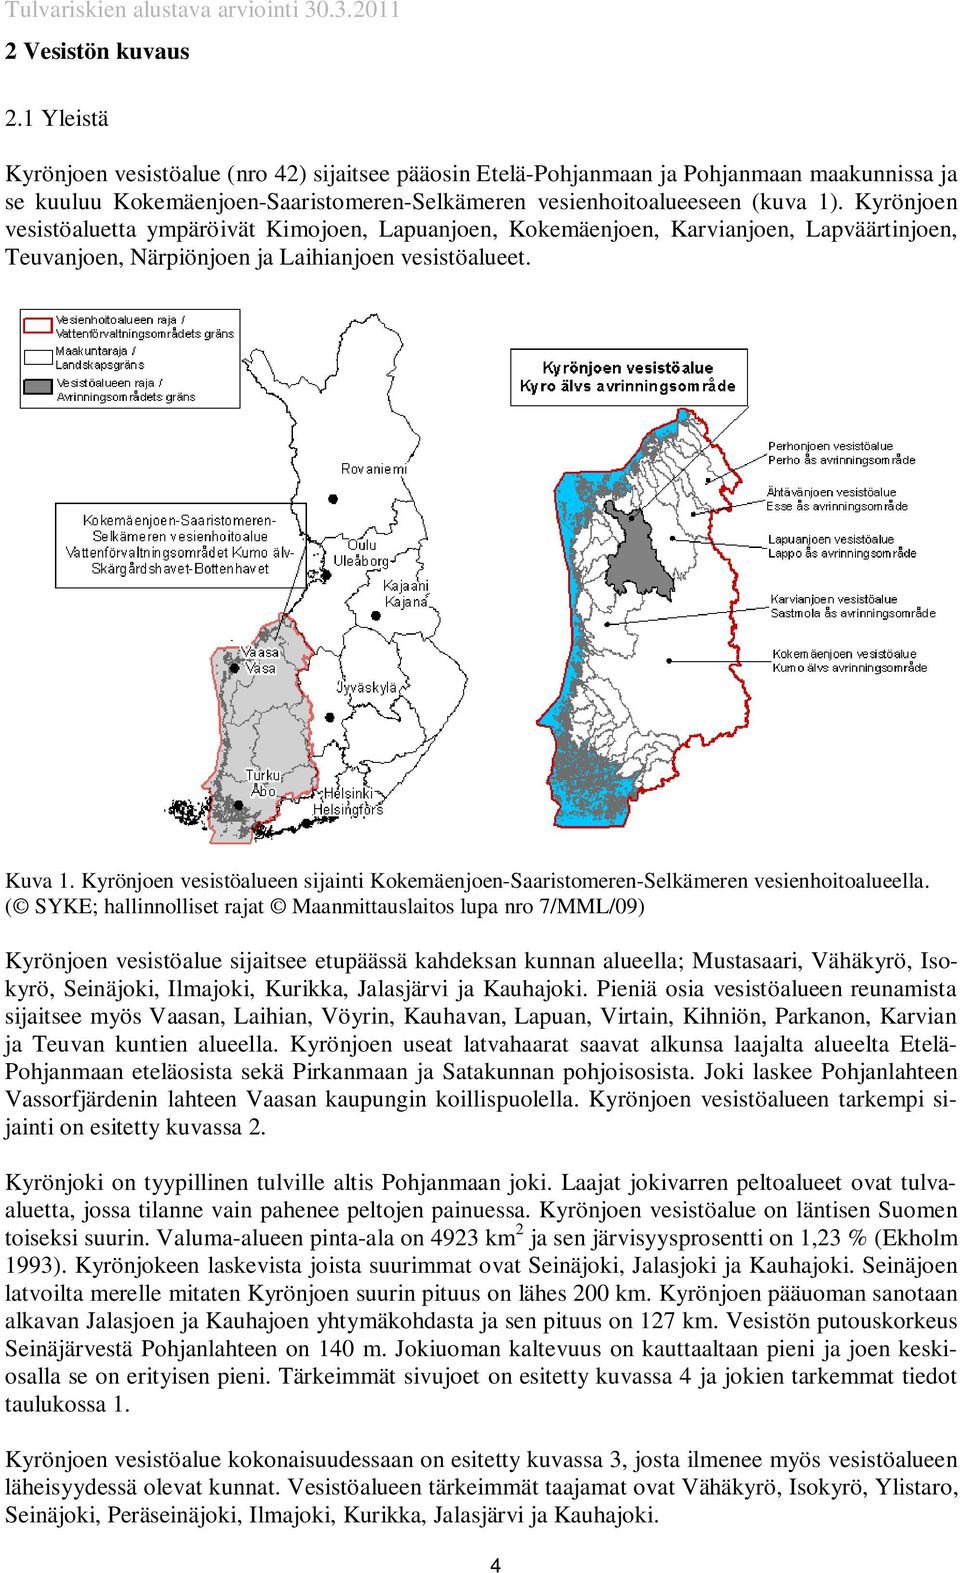 Kyrönjoen vesistöaluetta ympäröivät Kimojoen, Lapuanjoen, Kokemäenjoen, Karvianjoen, Lapväärtinjoen, Teuvanjoen, Närpiönjoen ja Laihianjoen vesistöalueet. Kuva 1.